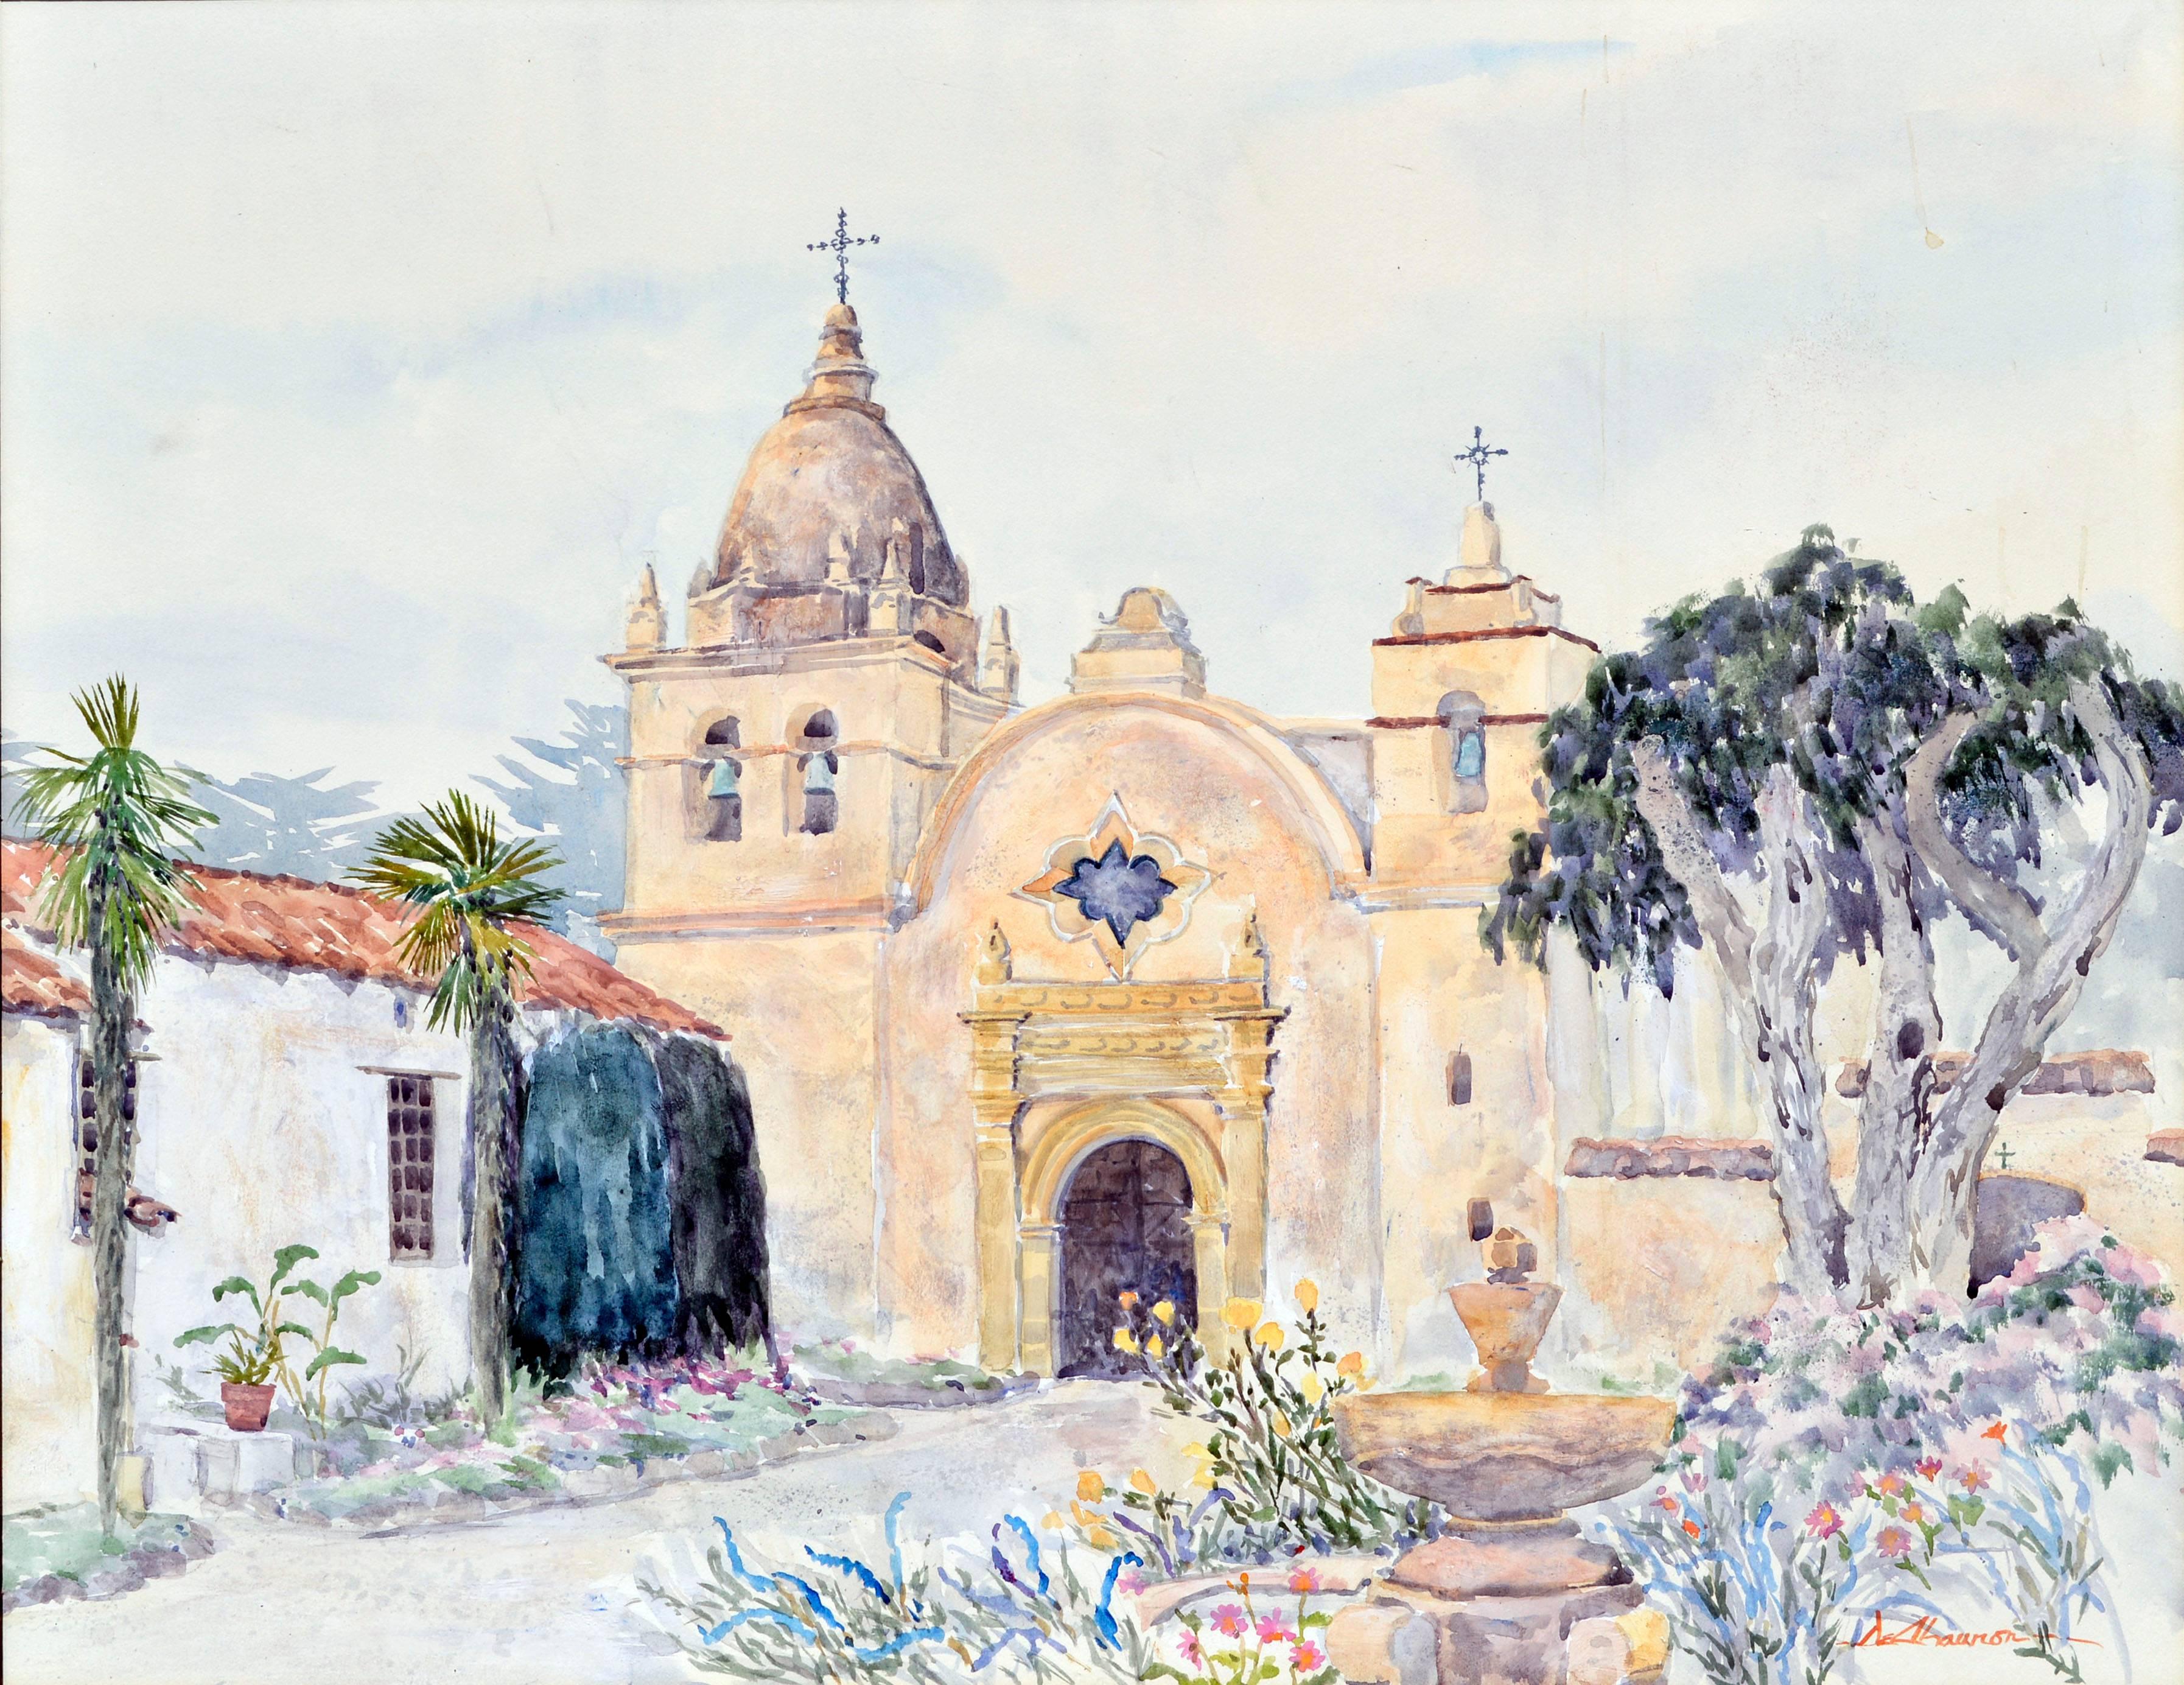 Carmel Mission Watercolor Landscape - Painting by Deanna DeChauron